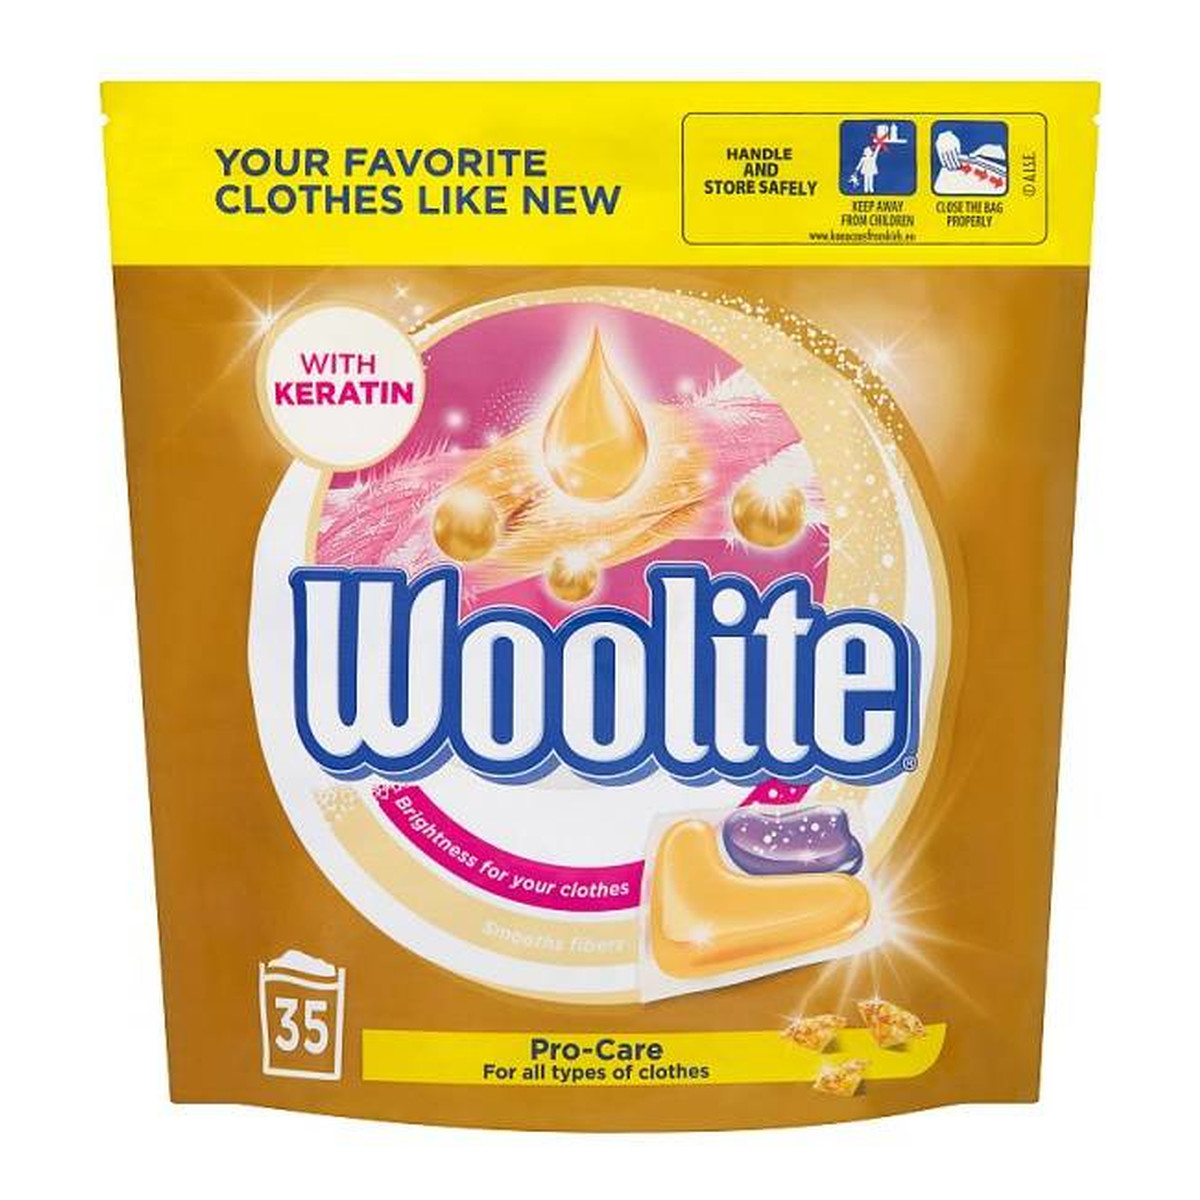 Woolite Pro-Care kapsułki z keratyną do prania kolorowych tkanin 35szt